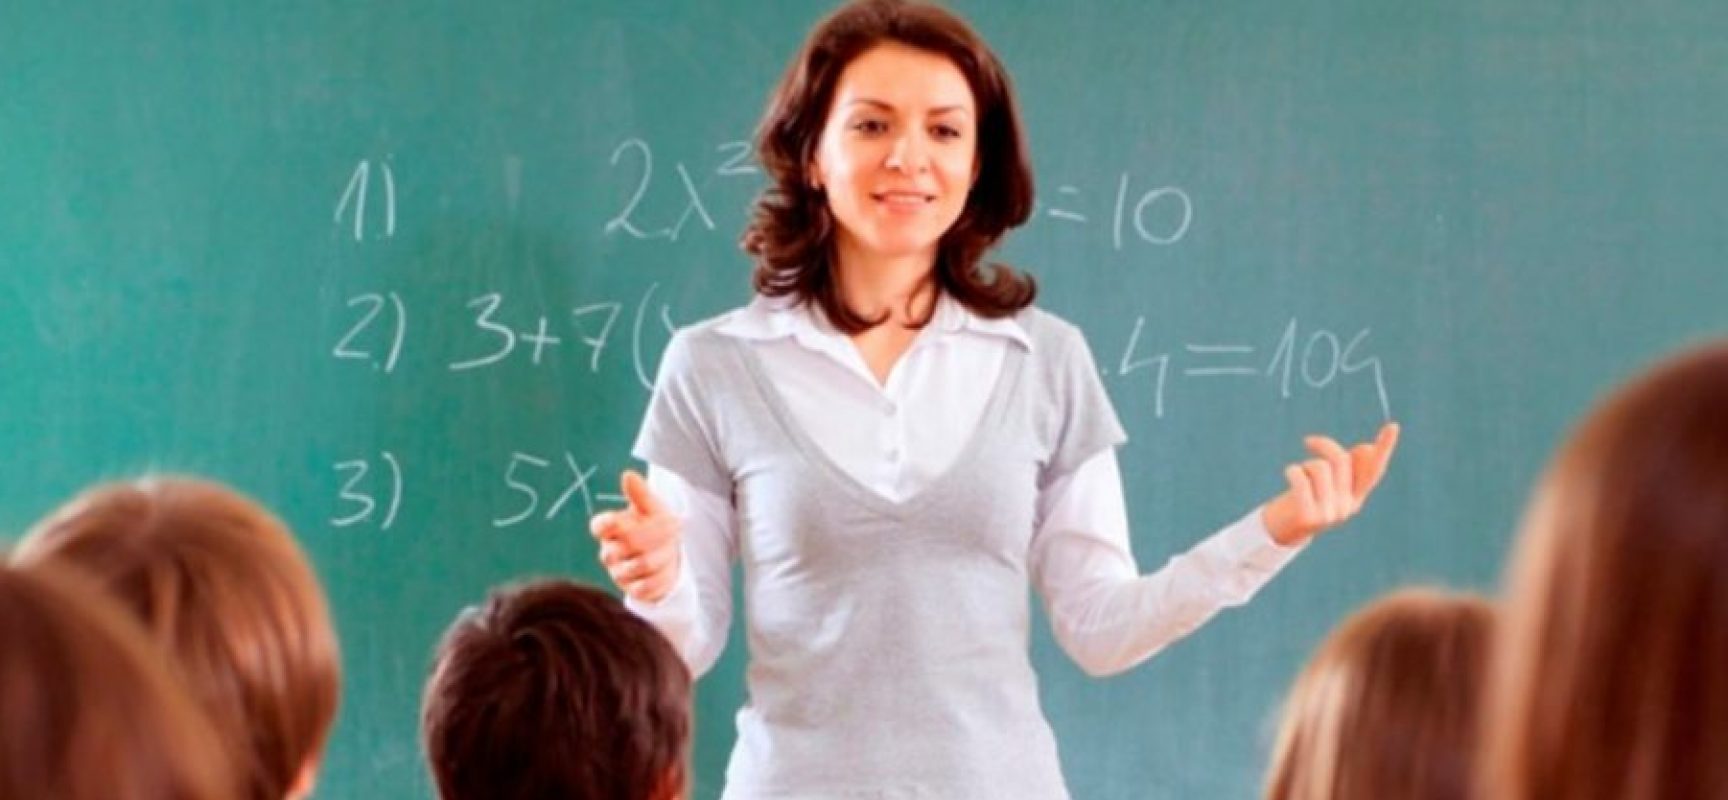 DIA DA MULHER:  Professoras lideram o ranking das ocupações femininas